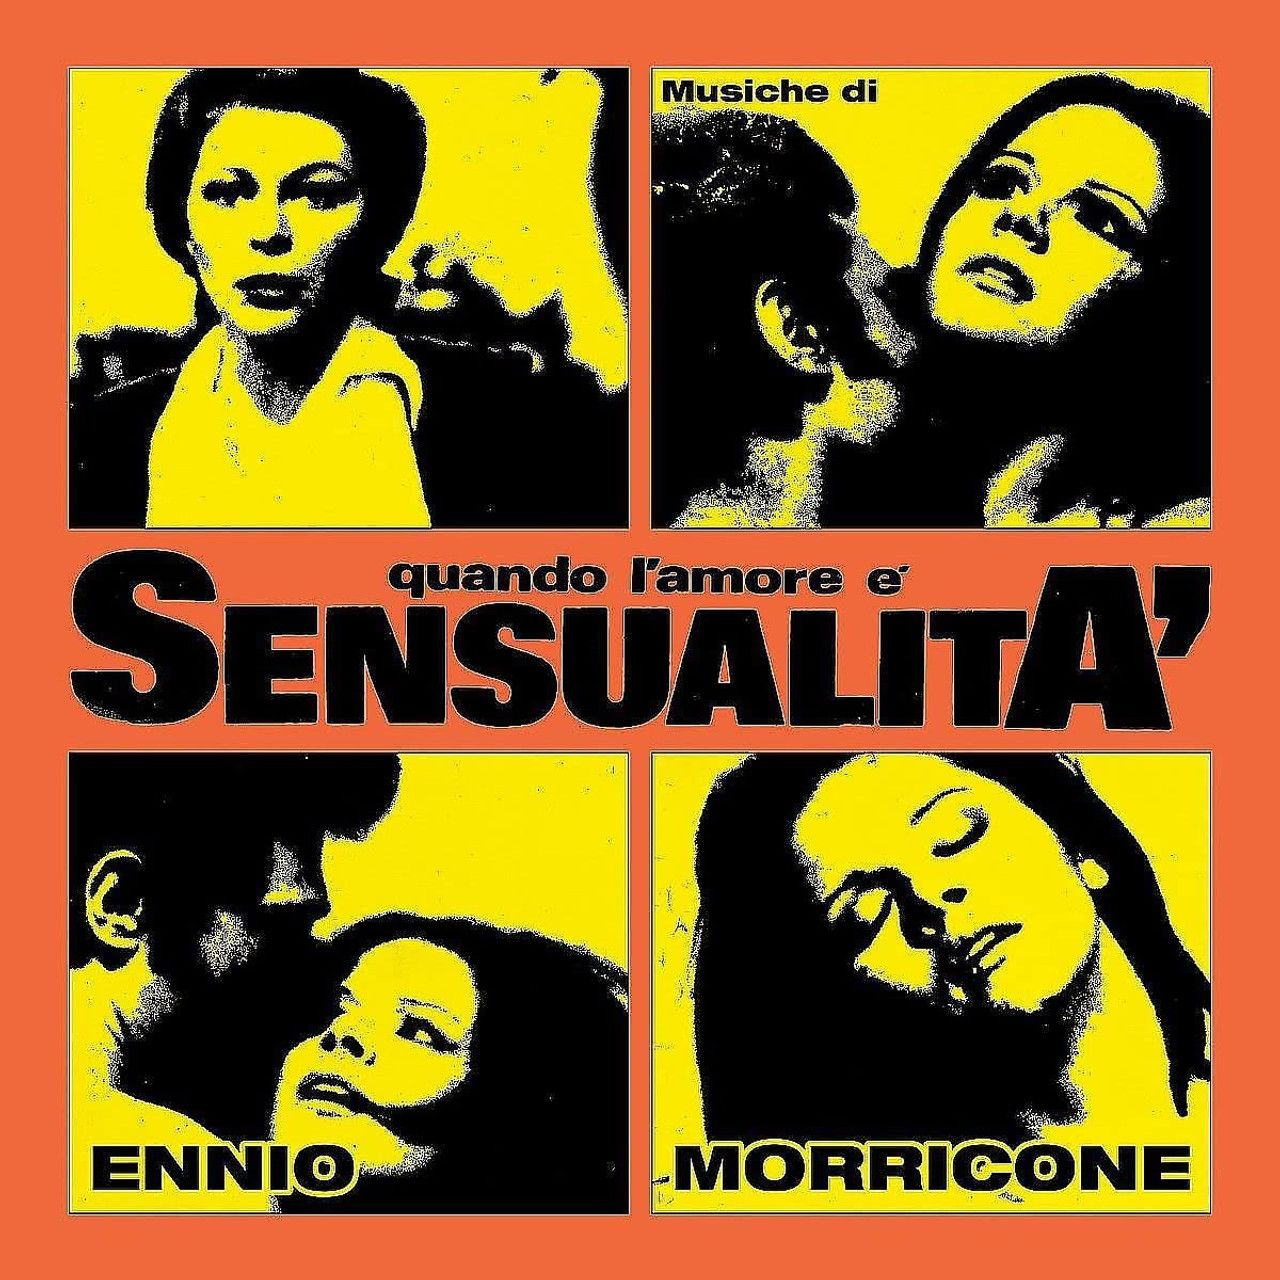 Ennio Morricone – Quando l'amore e sensualita (2 LP)